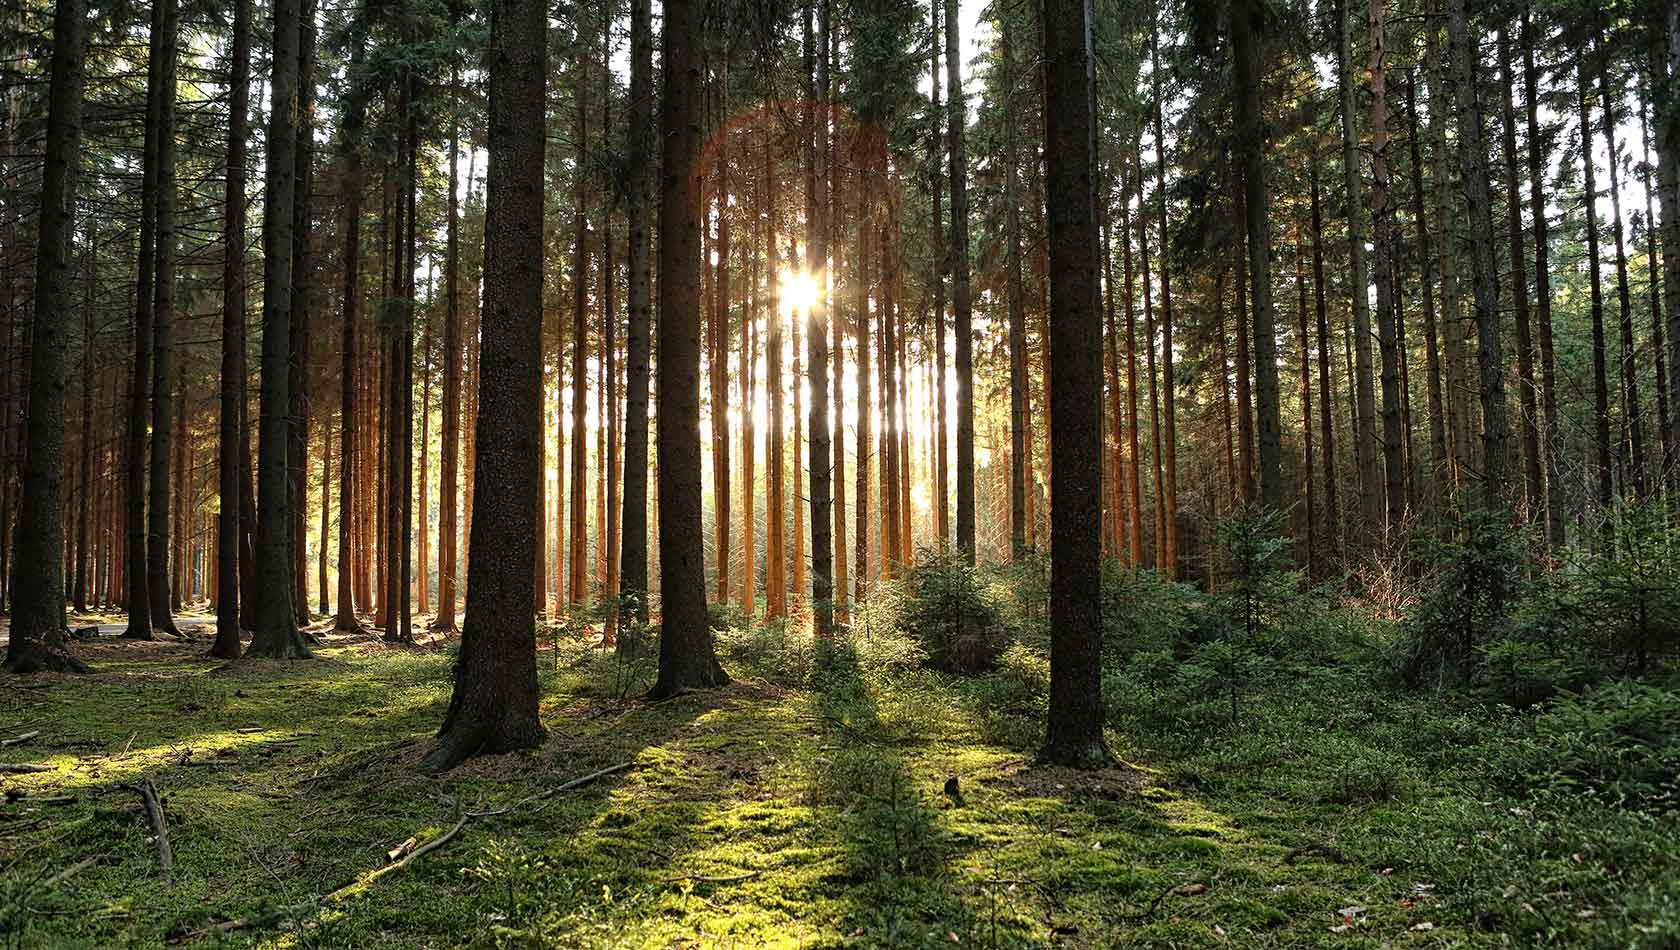 Finnos voittoon metsä- ja luontoyrittäjyyden kasvupolulla